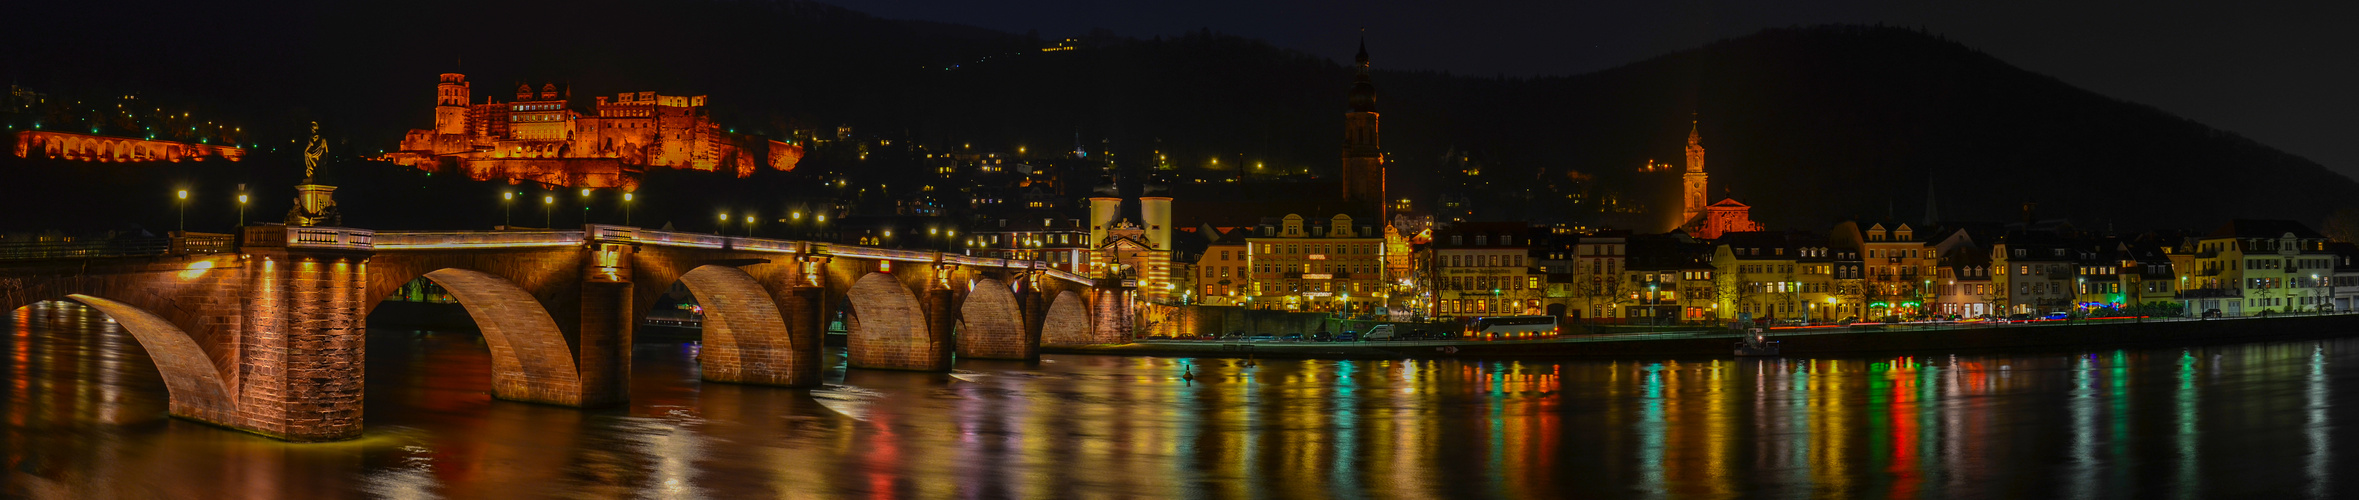 Heidelberg "Alte Brücke" nachts